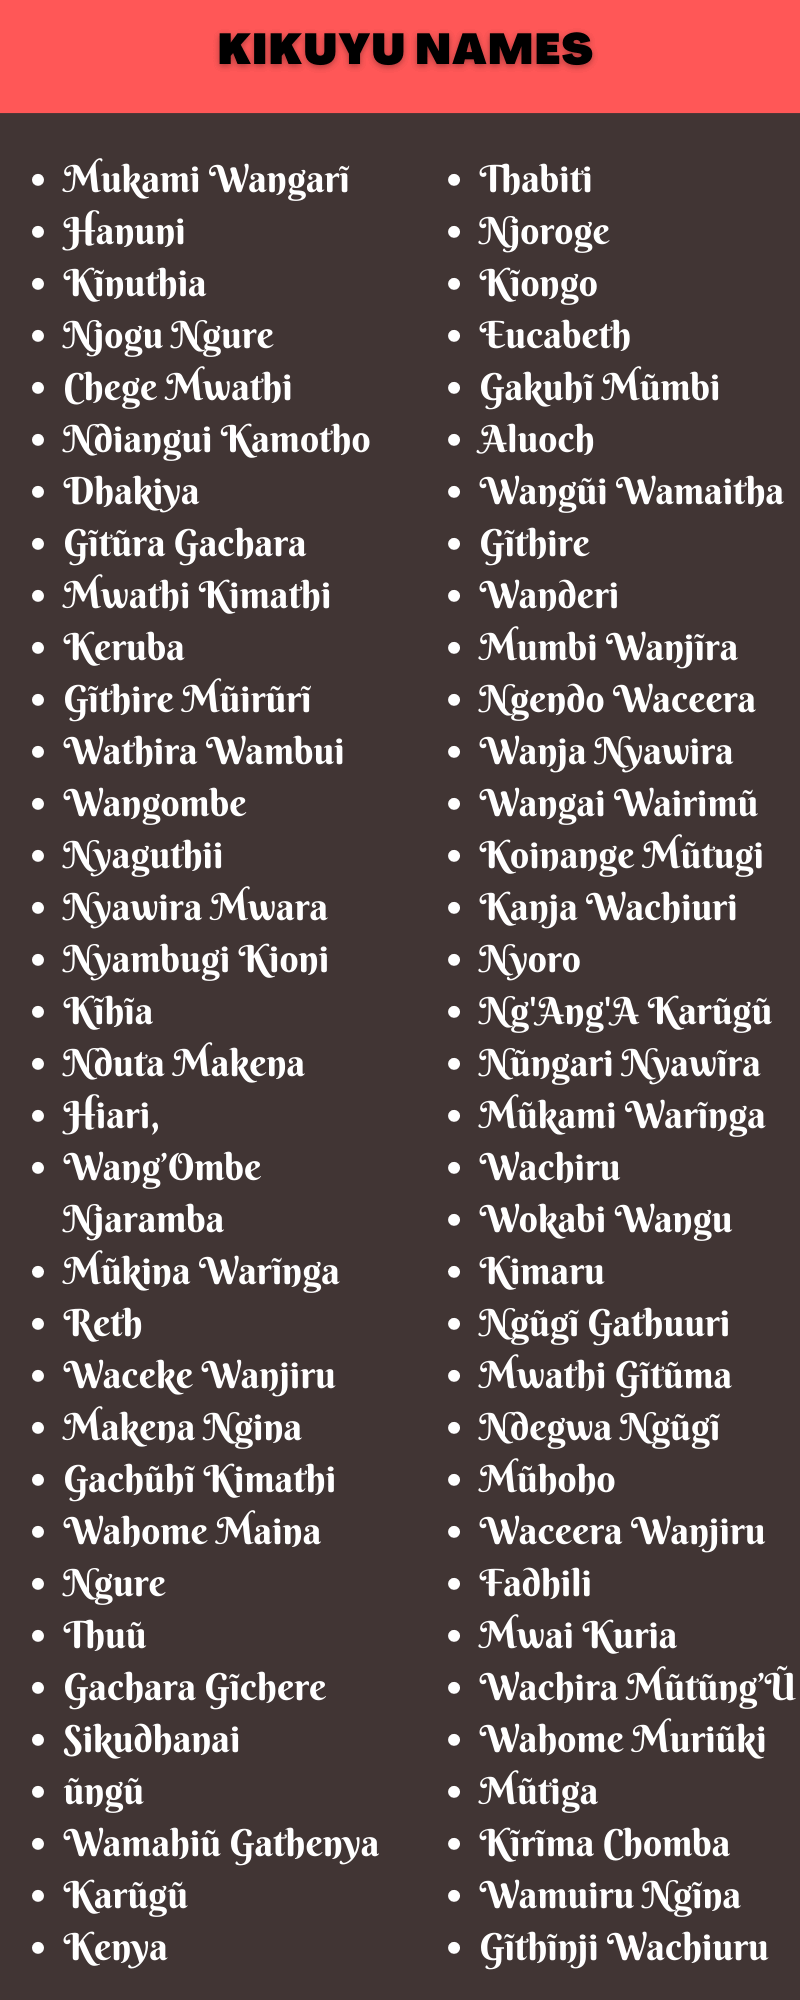 Kikuyu Names